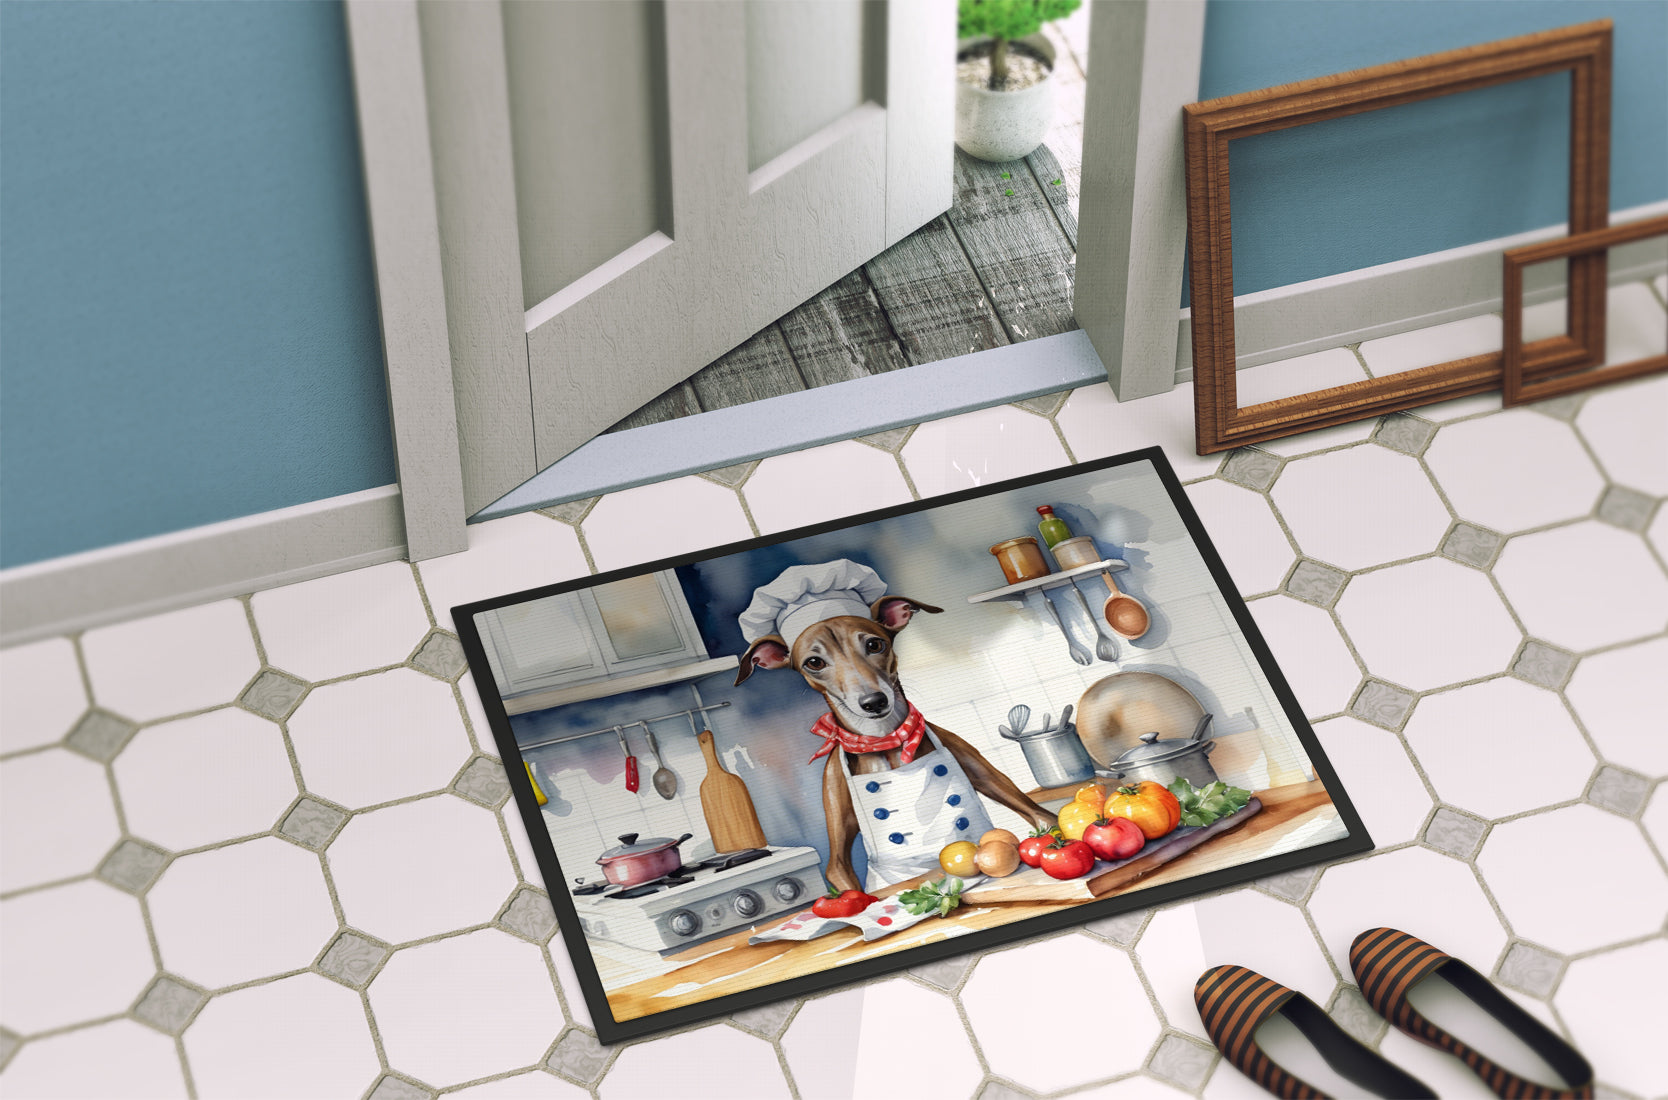 Greyhound The Chef Doormat